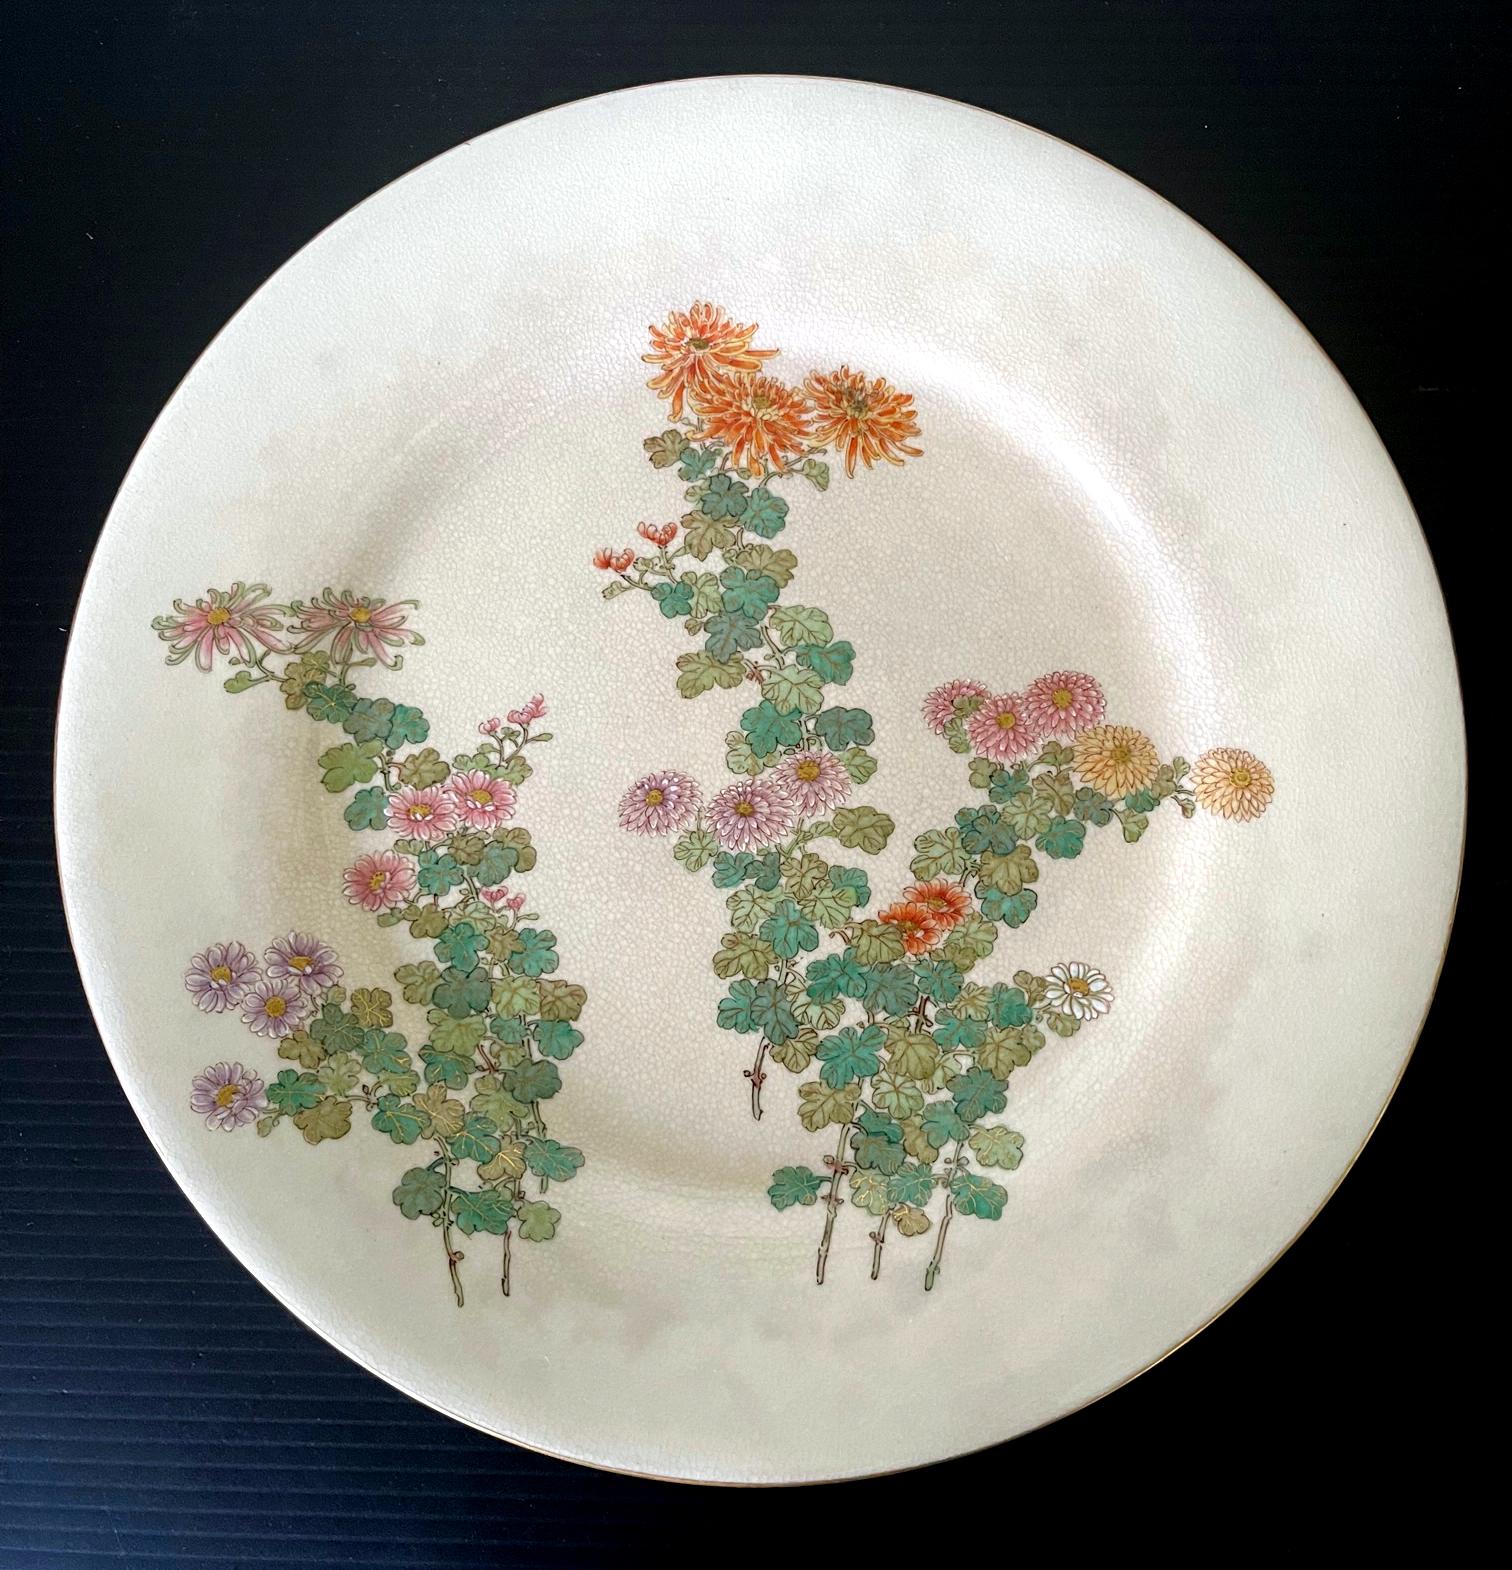 Assiette en céramique japonaise satsuma fabriquée par Kinkozan et vendue par Yamanaka & Co. vers les années 1900-20 (fin de la période Meiji à début de la période Tasho). L'assiette émaillée de couleur crème présente un très beau décor de bouquets